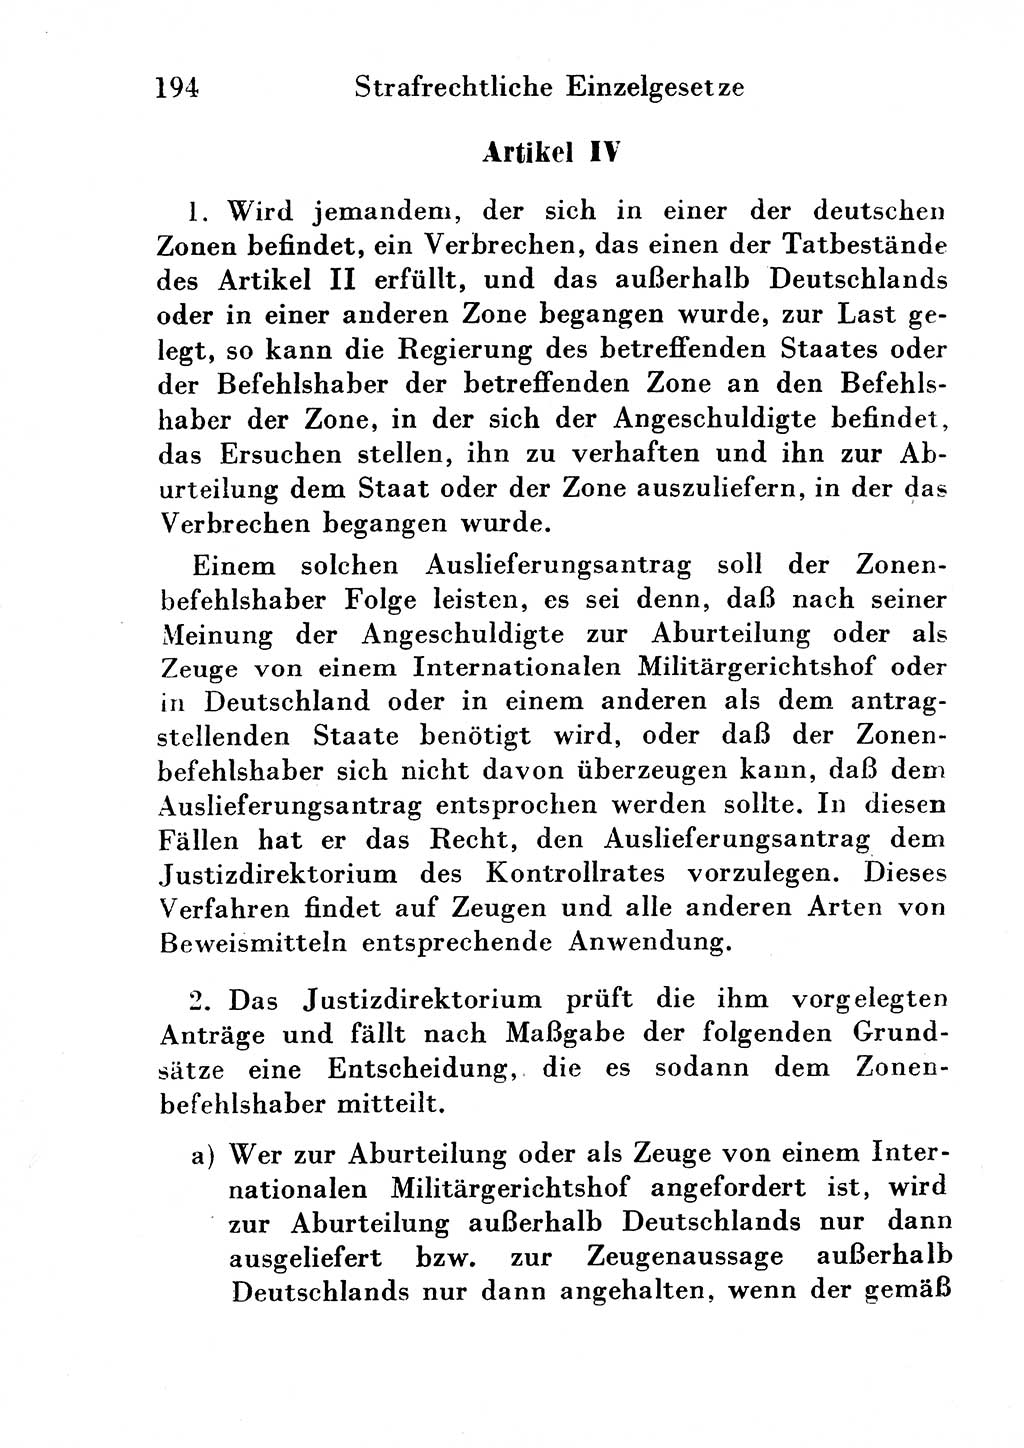 Strafgesetzbuch (StGB) und andere Strafgesetze [Deutsche Demokratische Republik (DDR)] 1954, Seite 194 (StGB Strafges. DDR 1954, S. 194)